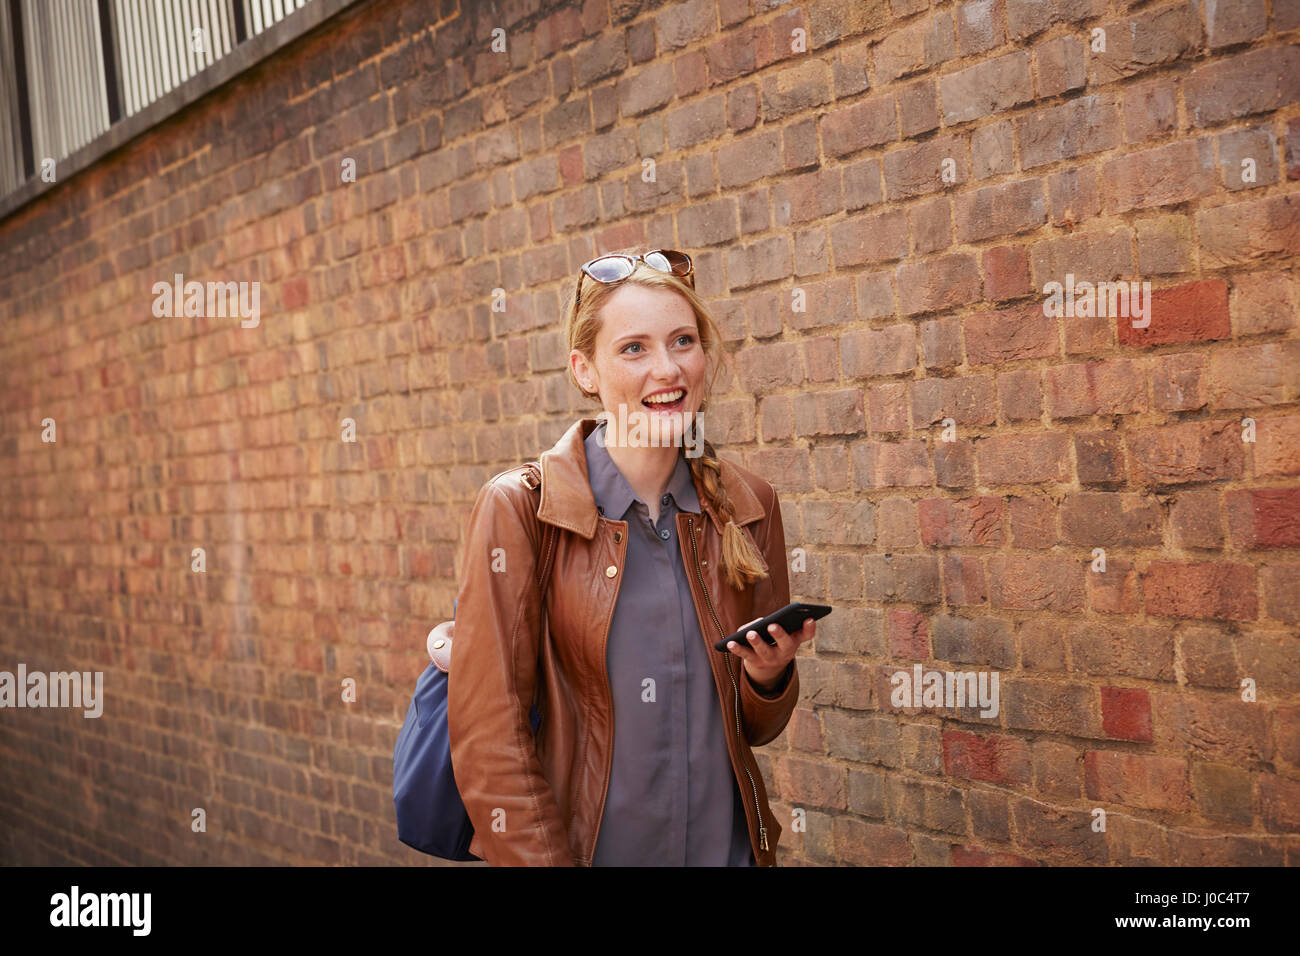 Woman walking along brick wall, London, UK Stock Photo